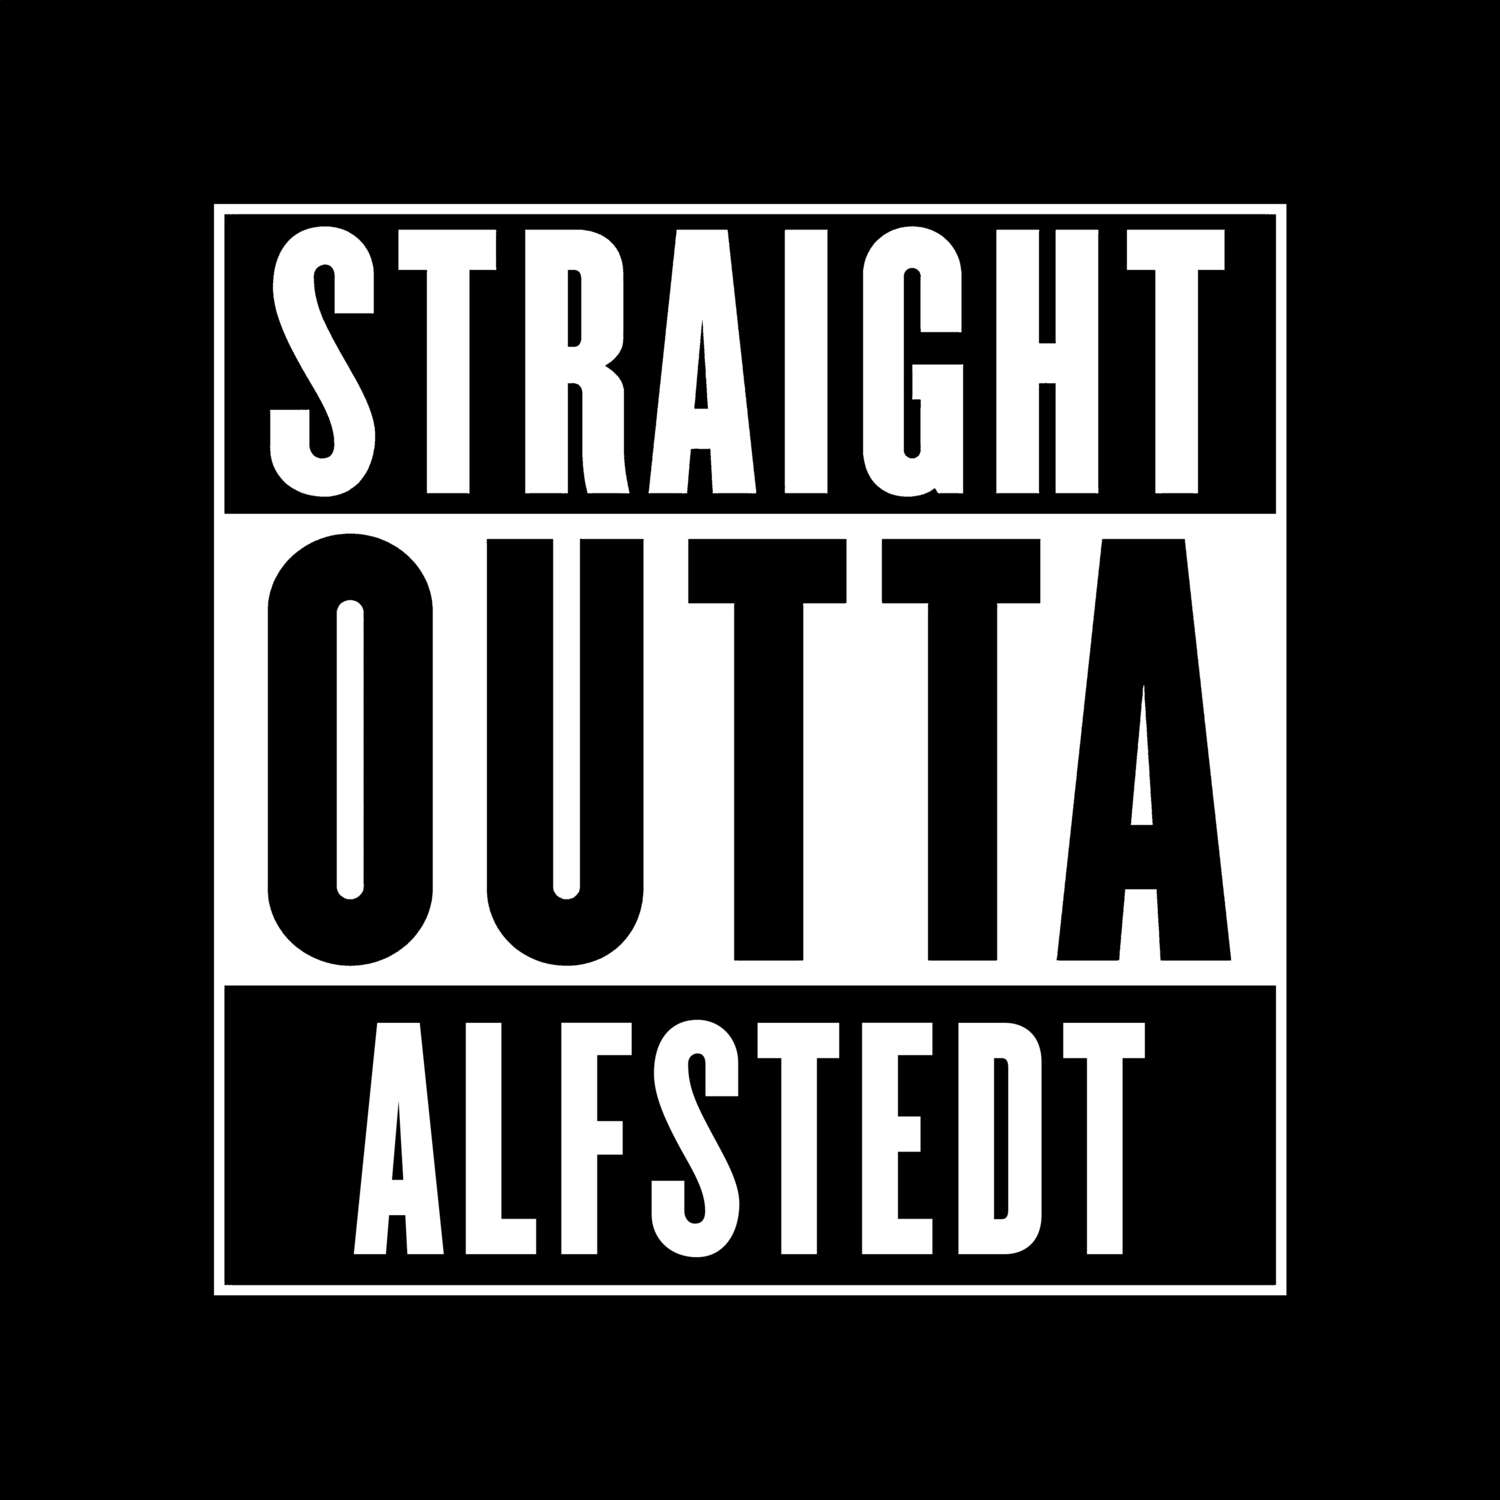 Alfstedt T-Shirt »Straight Outta«